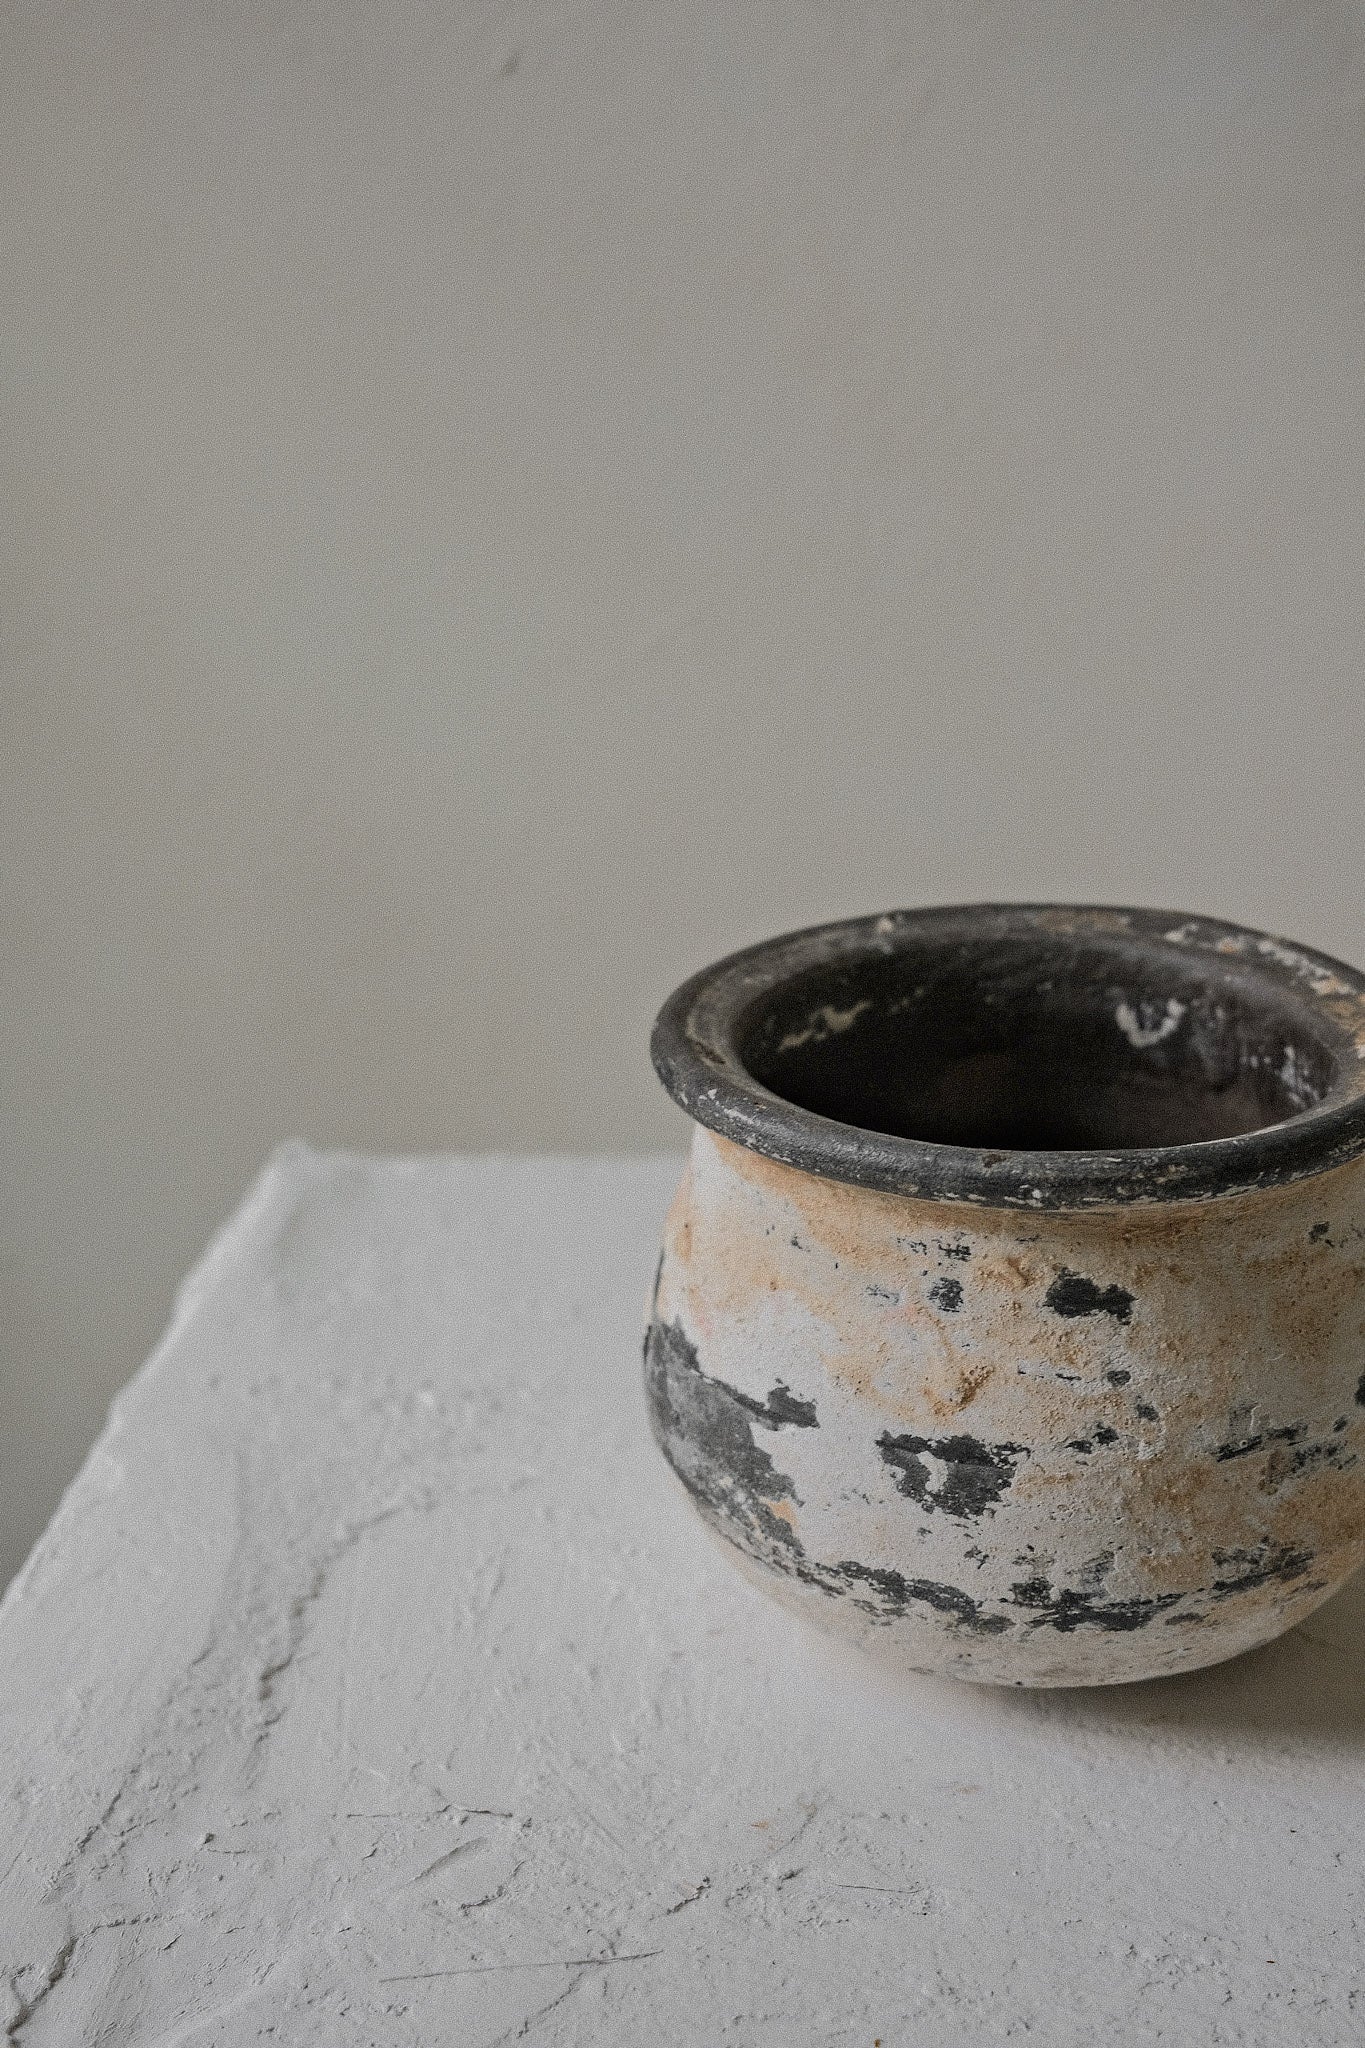 Vintage Clay Pot